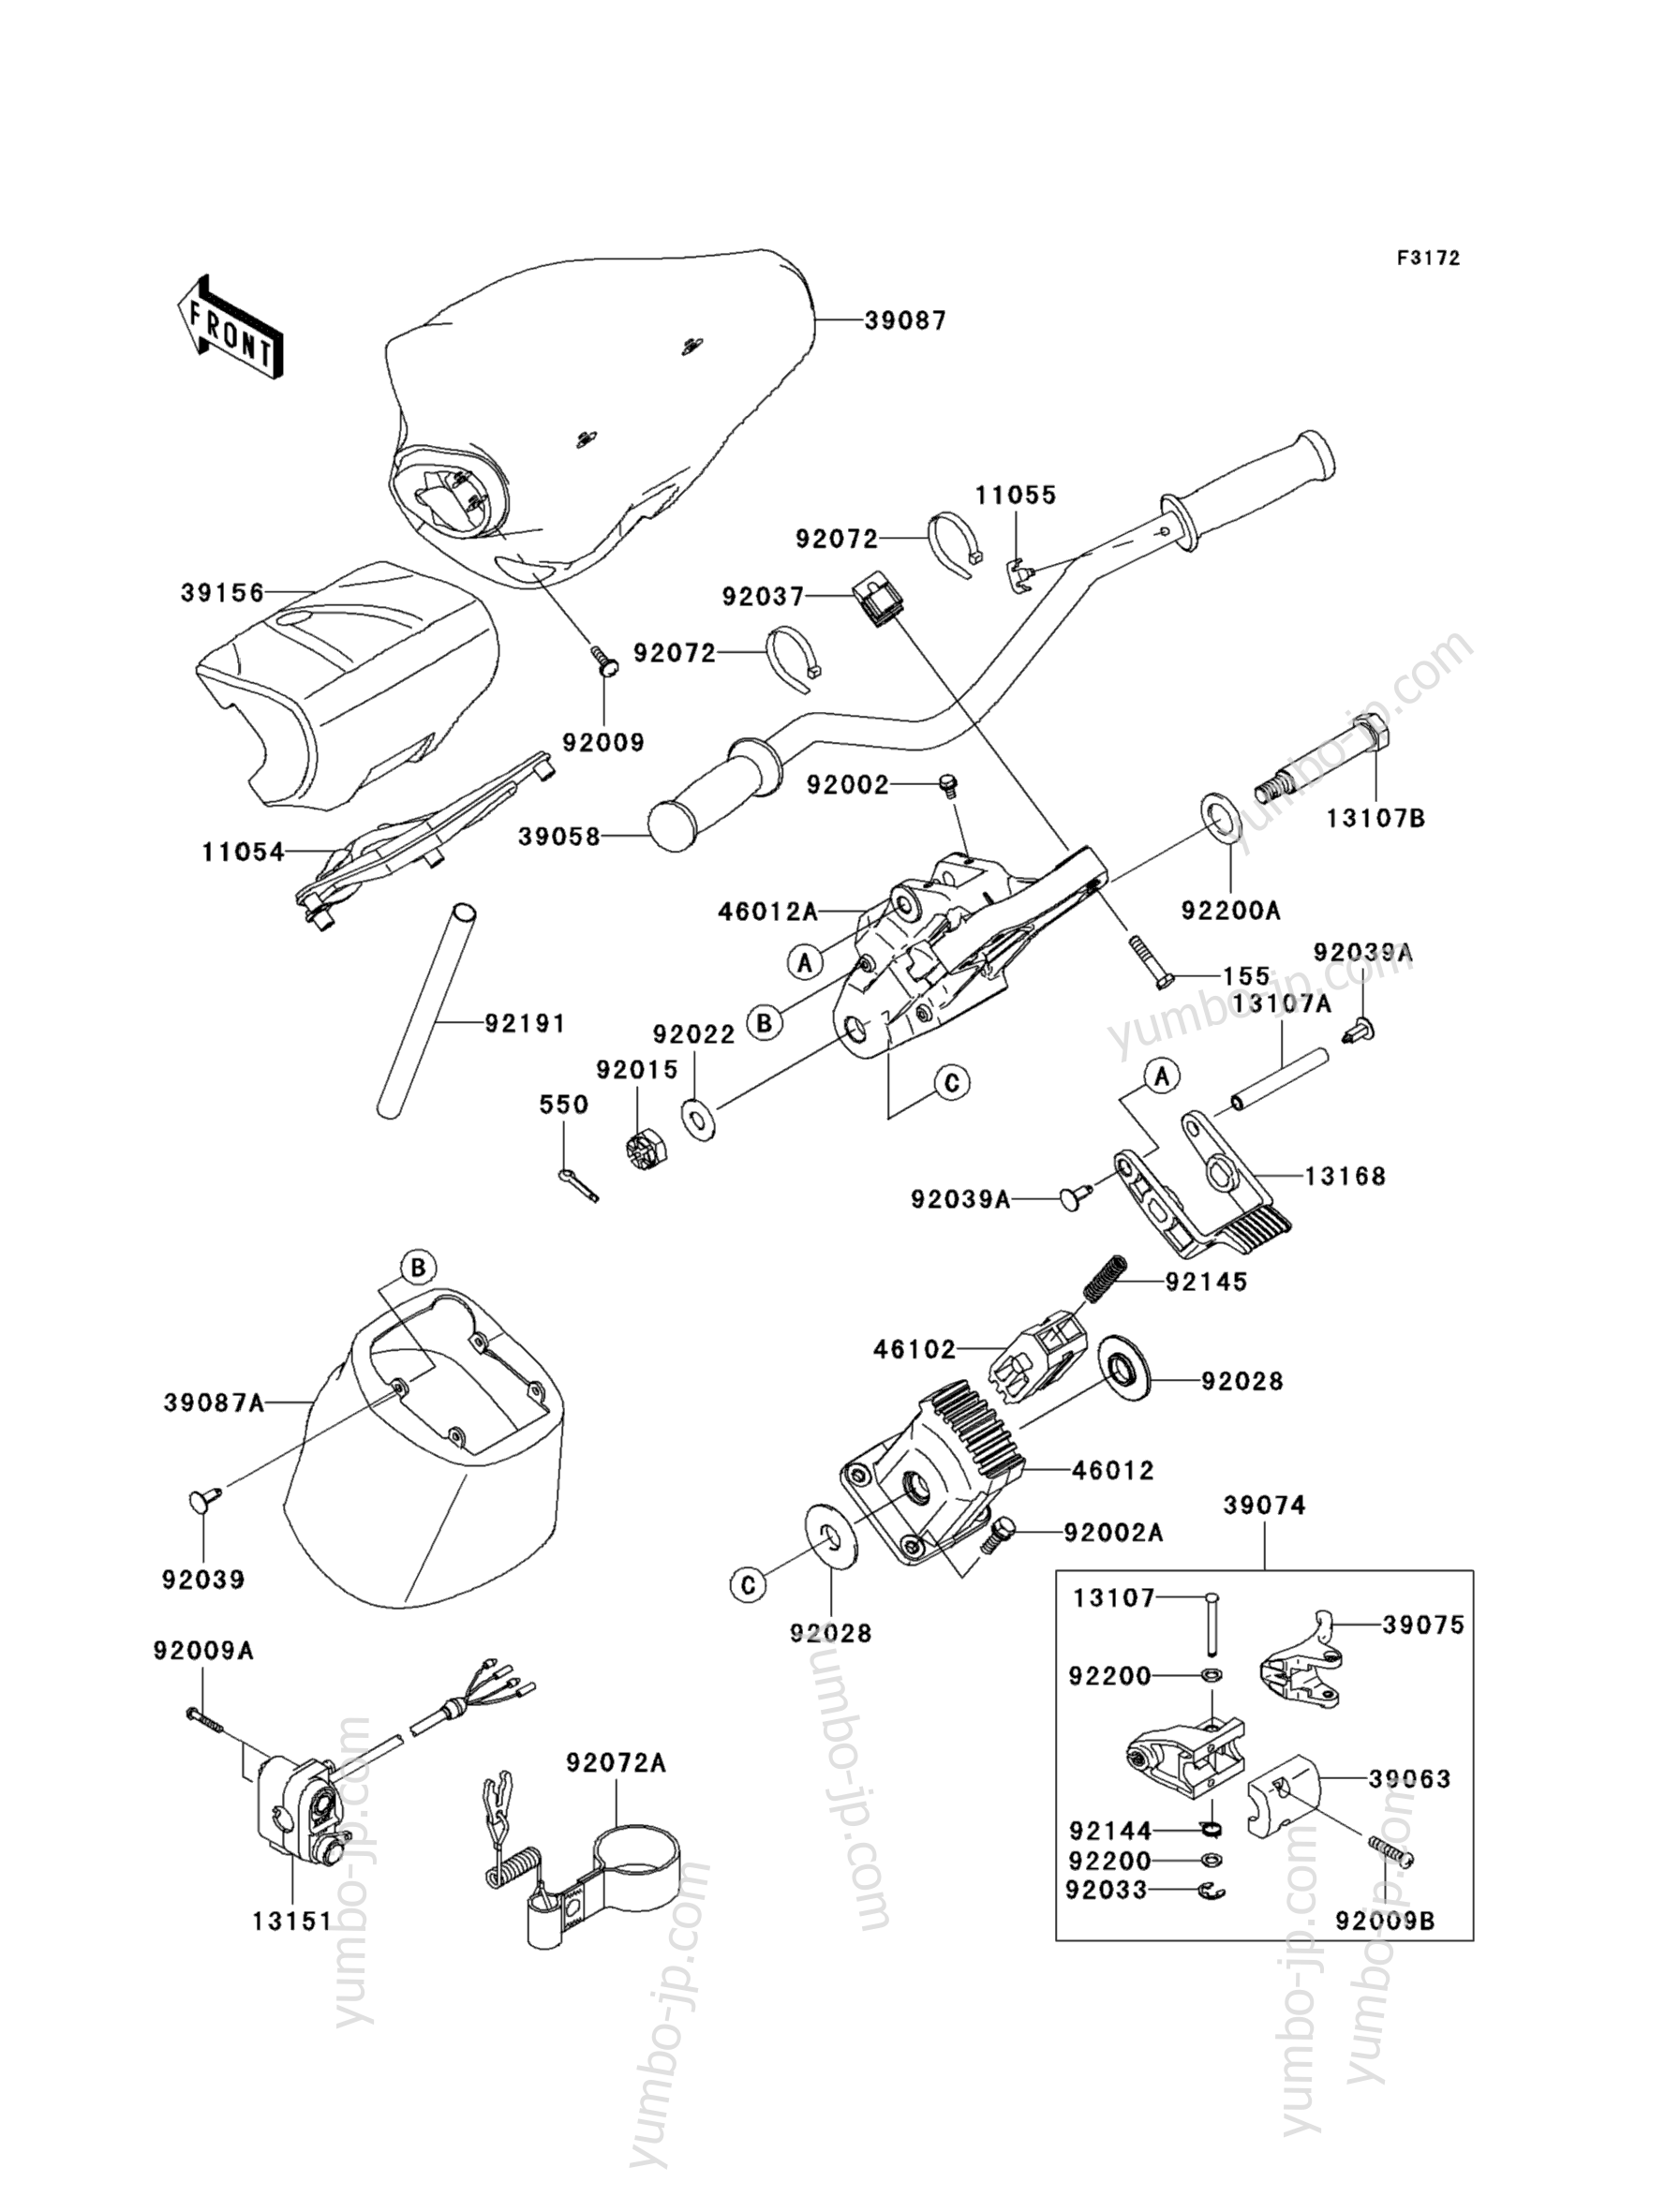 Румпель (рукоятка управления) для гидроциклов KAWASAKI JET SKI ULTRA LX (JT1500GBF) 2011 г.